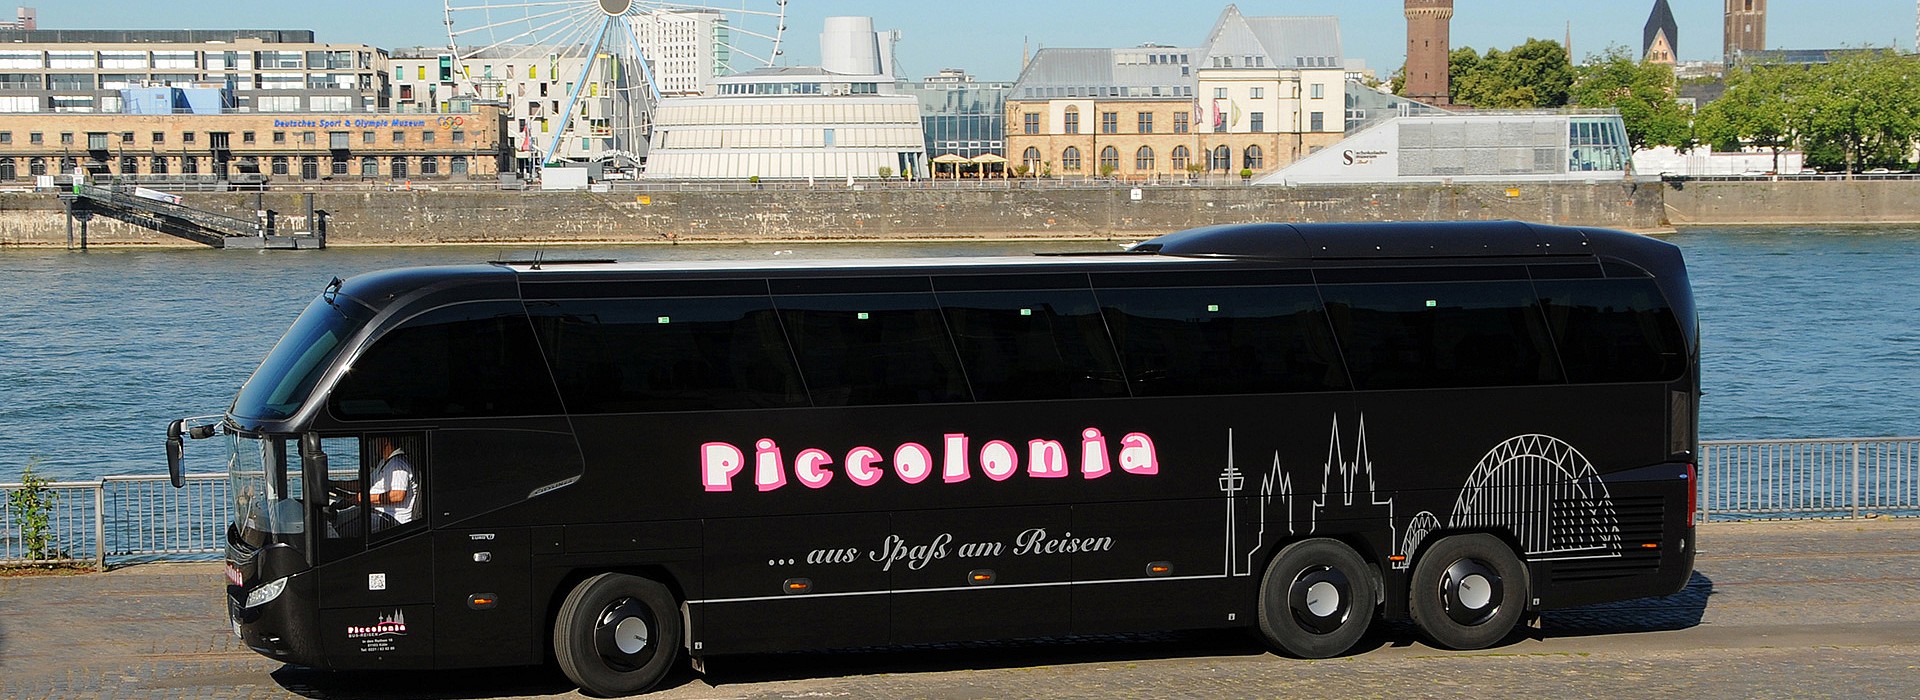 003_bus_piccolonia_pic10.jpg